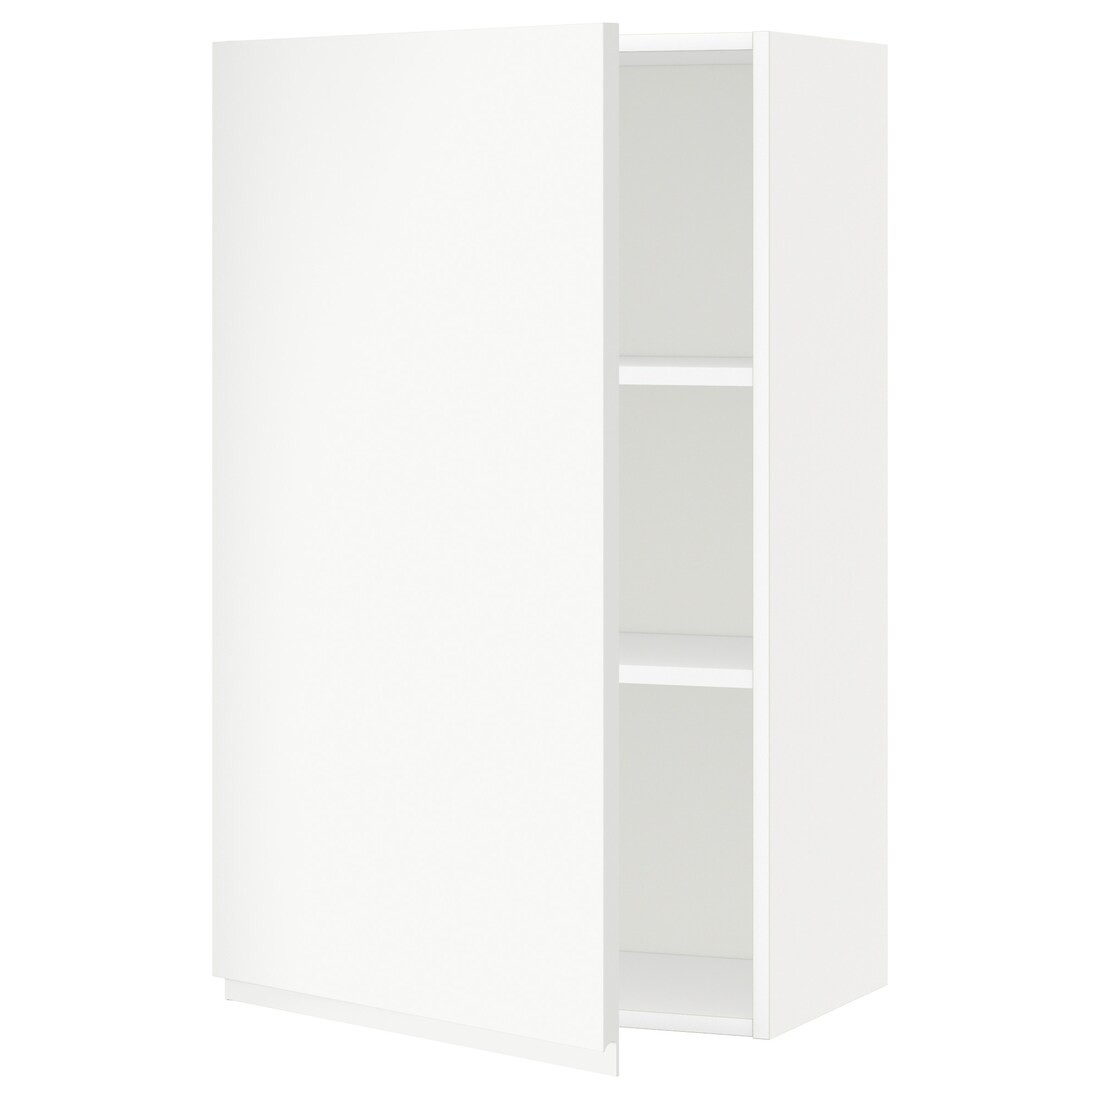 IKEA METOD МЕТОД Шкаф навесной с полками, белый / Voxtorp матовый белый, 60x100 см 69454423 694.544.23